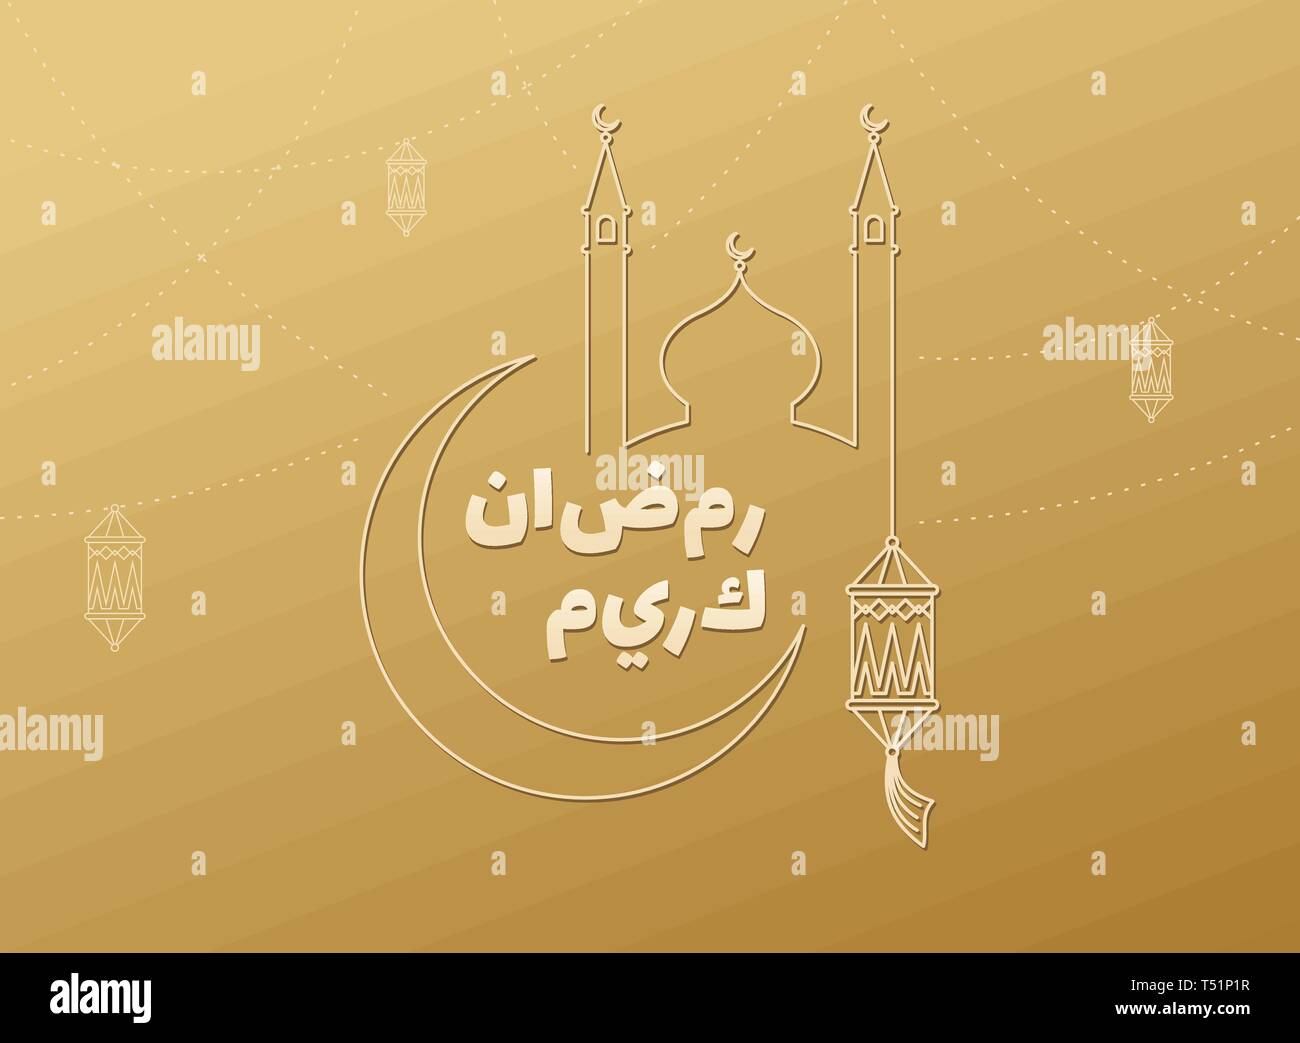 Ramadan Kareem islamischen vektor design Moschee Kuppel und Turm, Halbmond, Laterne. Arabisch leuchtende Lampen auf Gold Hintergrund, Kalligraphie Worte. Heilige m Stock Vektor